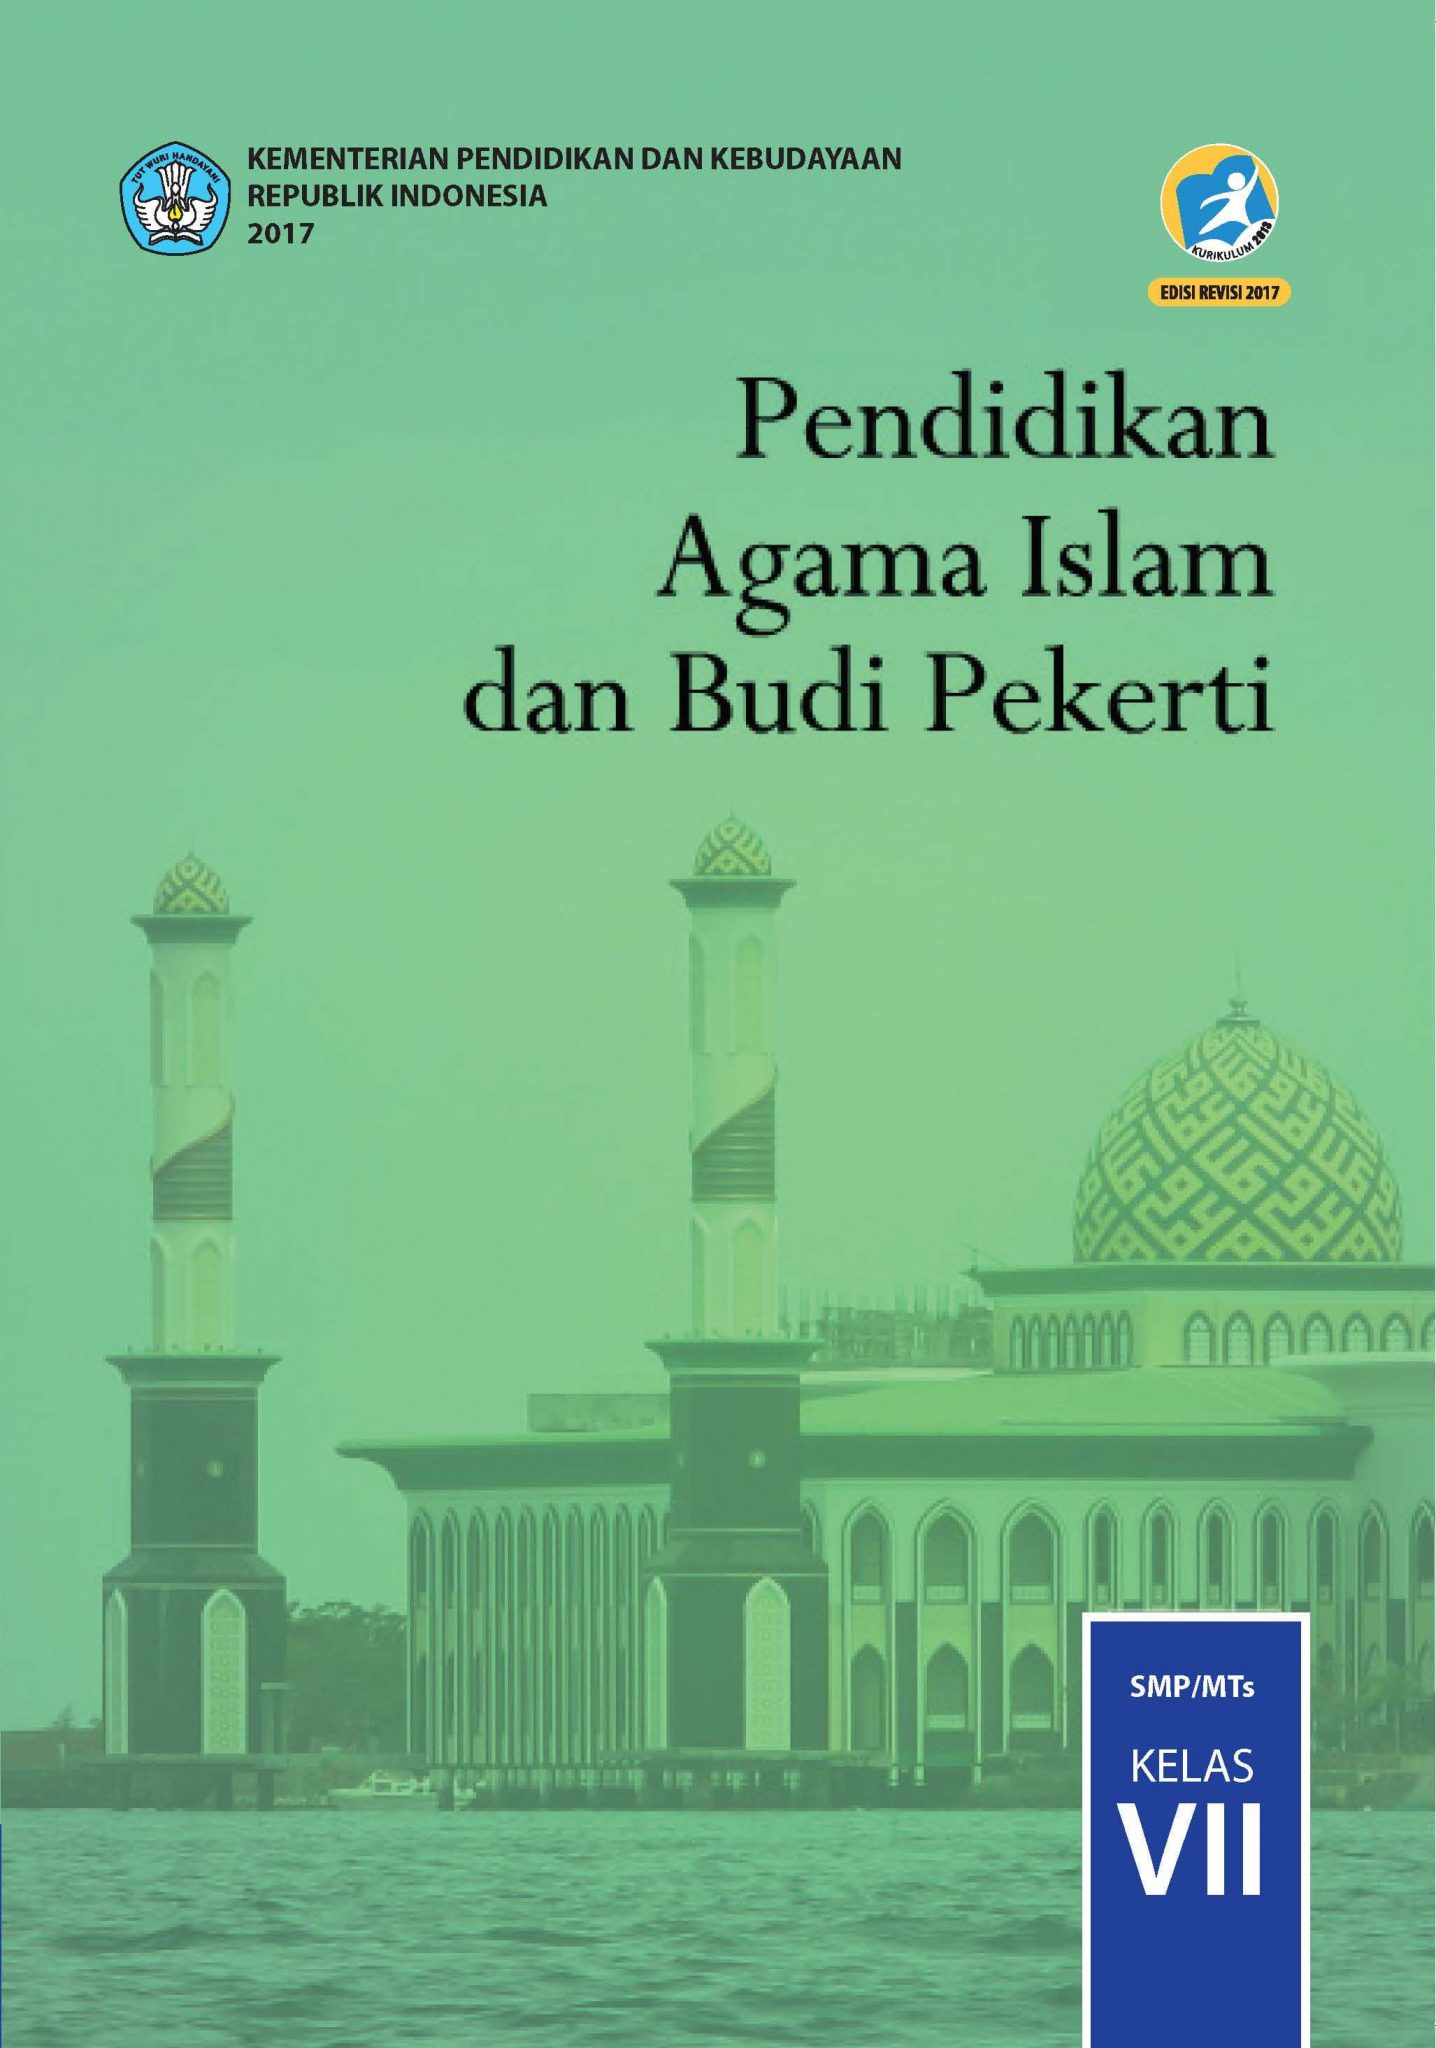 Download Buku Pendidikan Agama Islam dan Budi Pekerti Kelas 7 SMP